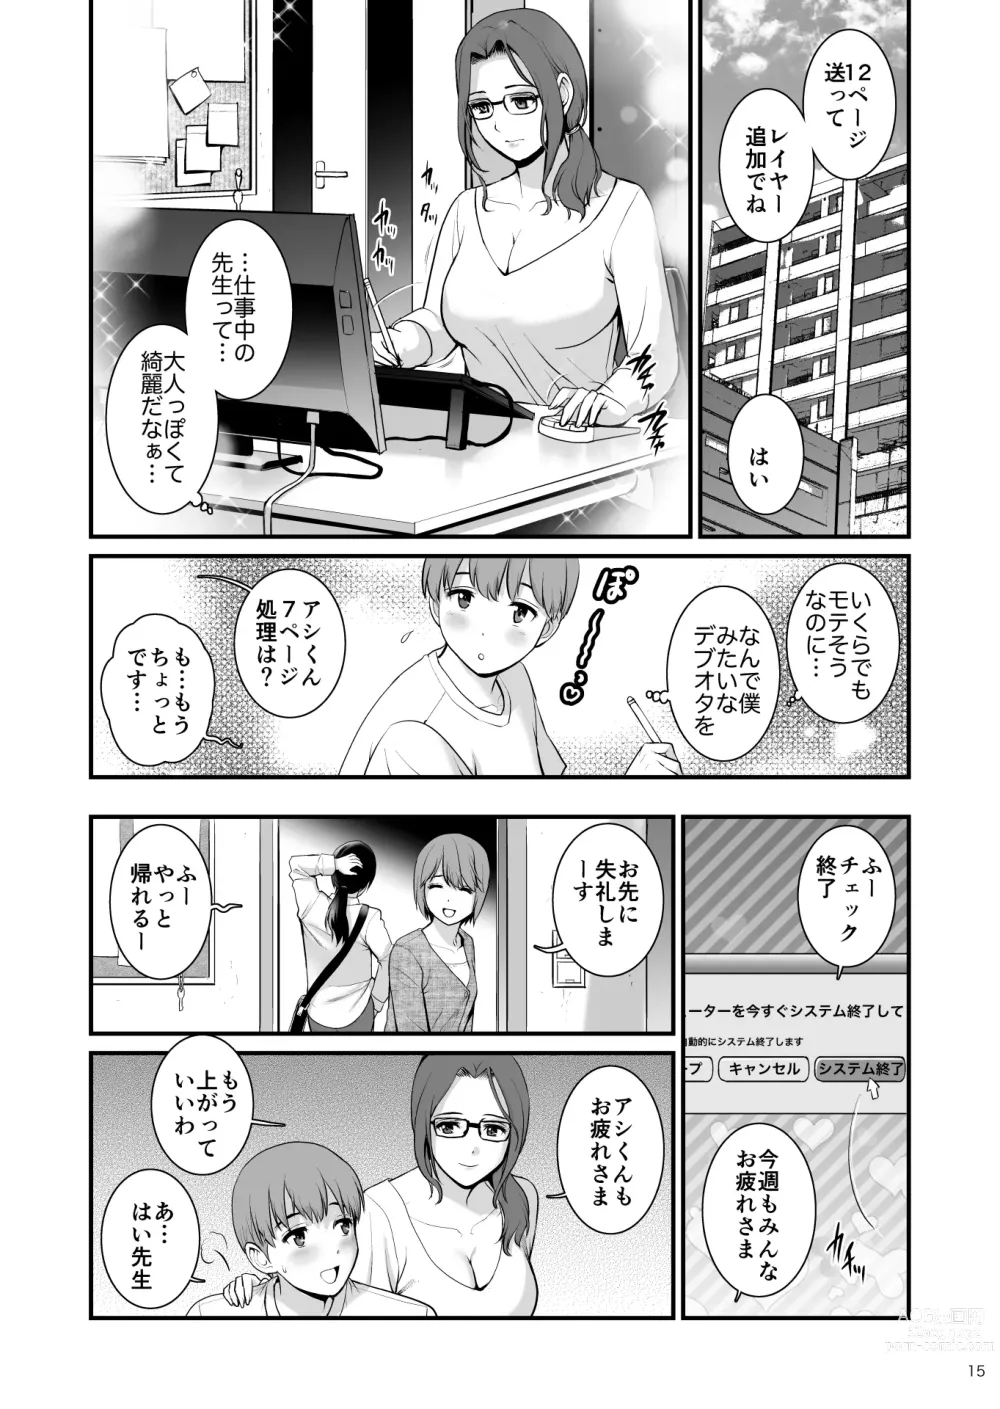 Page 14 of doujinshi Shukujo Monologue Employer